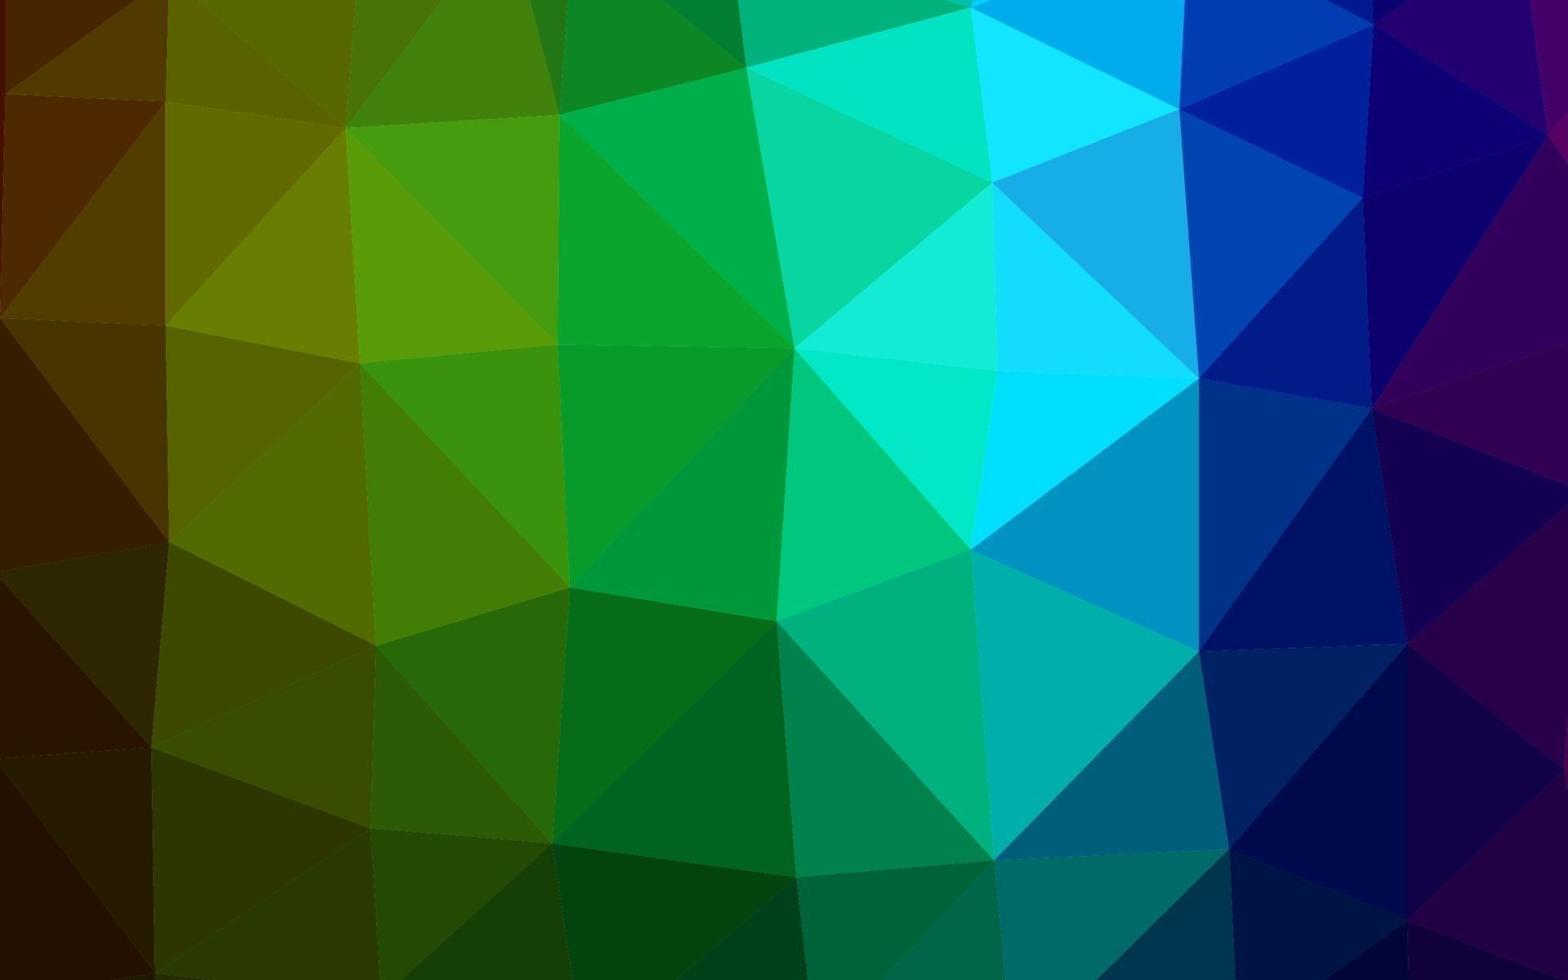 donkere veelkleurige, regenboog vector abstracte veelhoekige dekking.